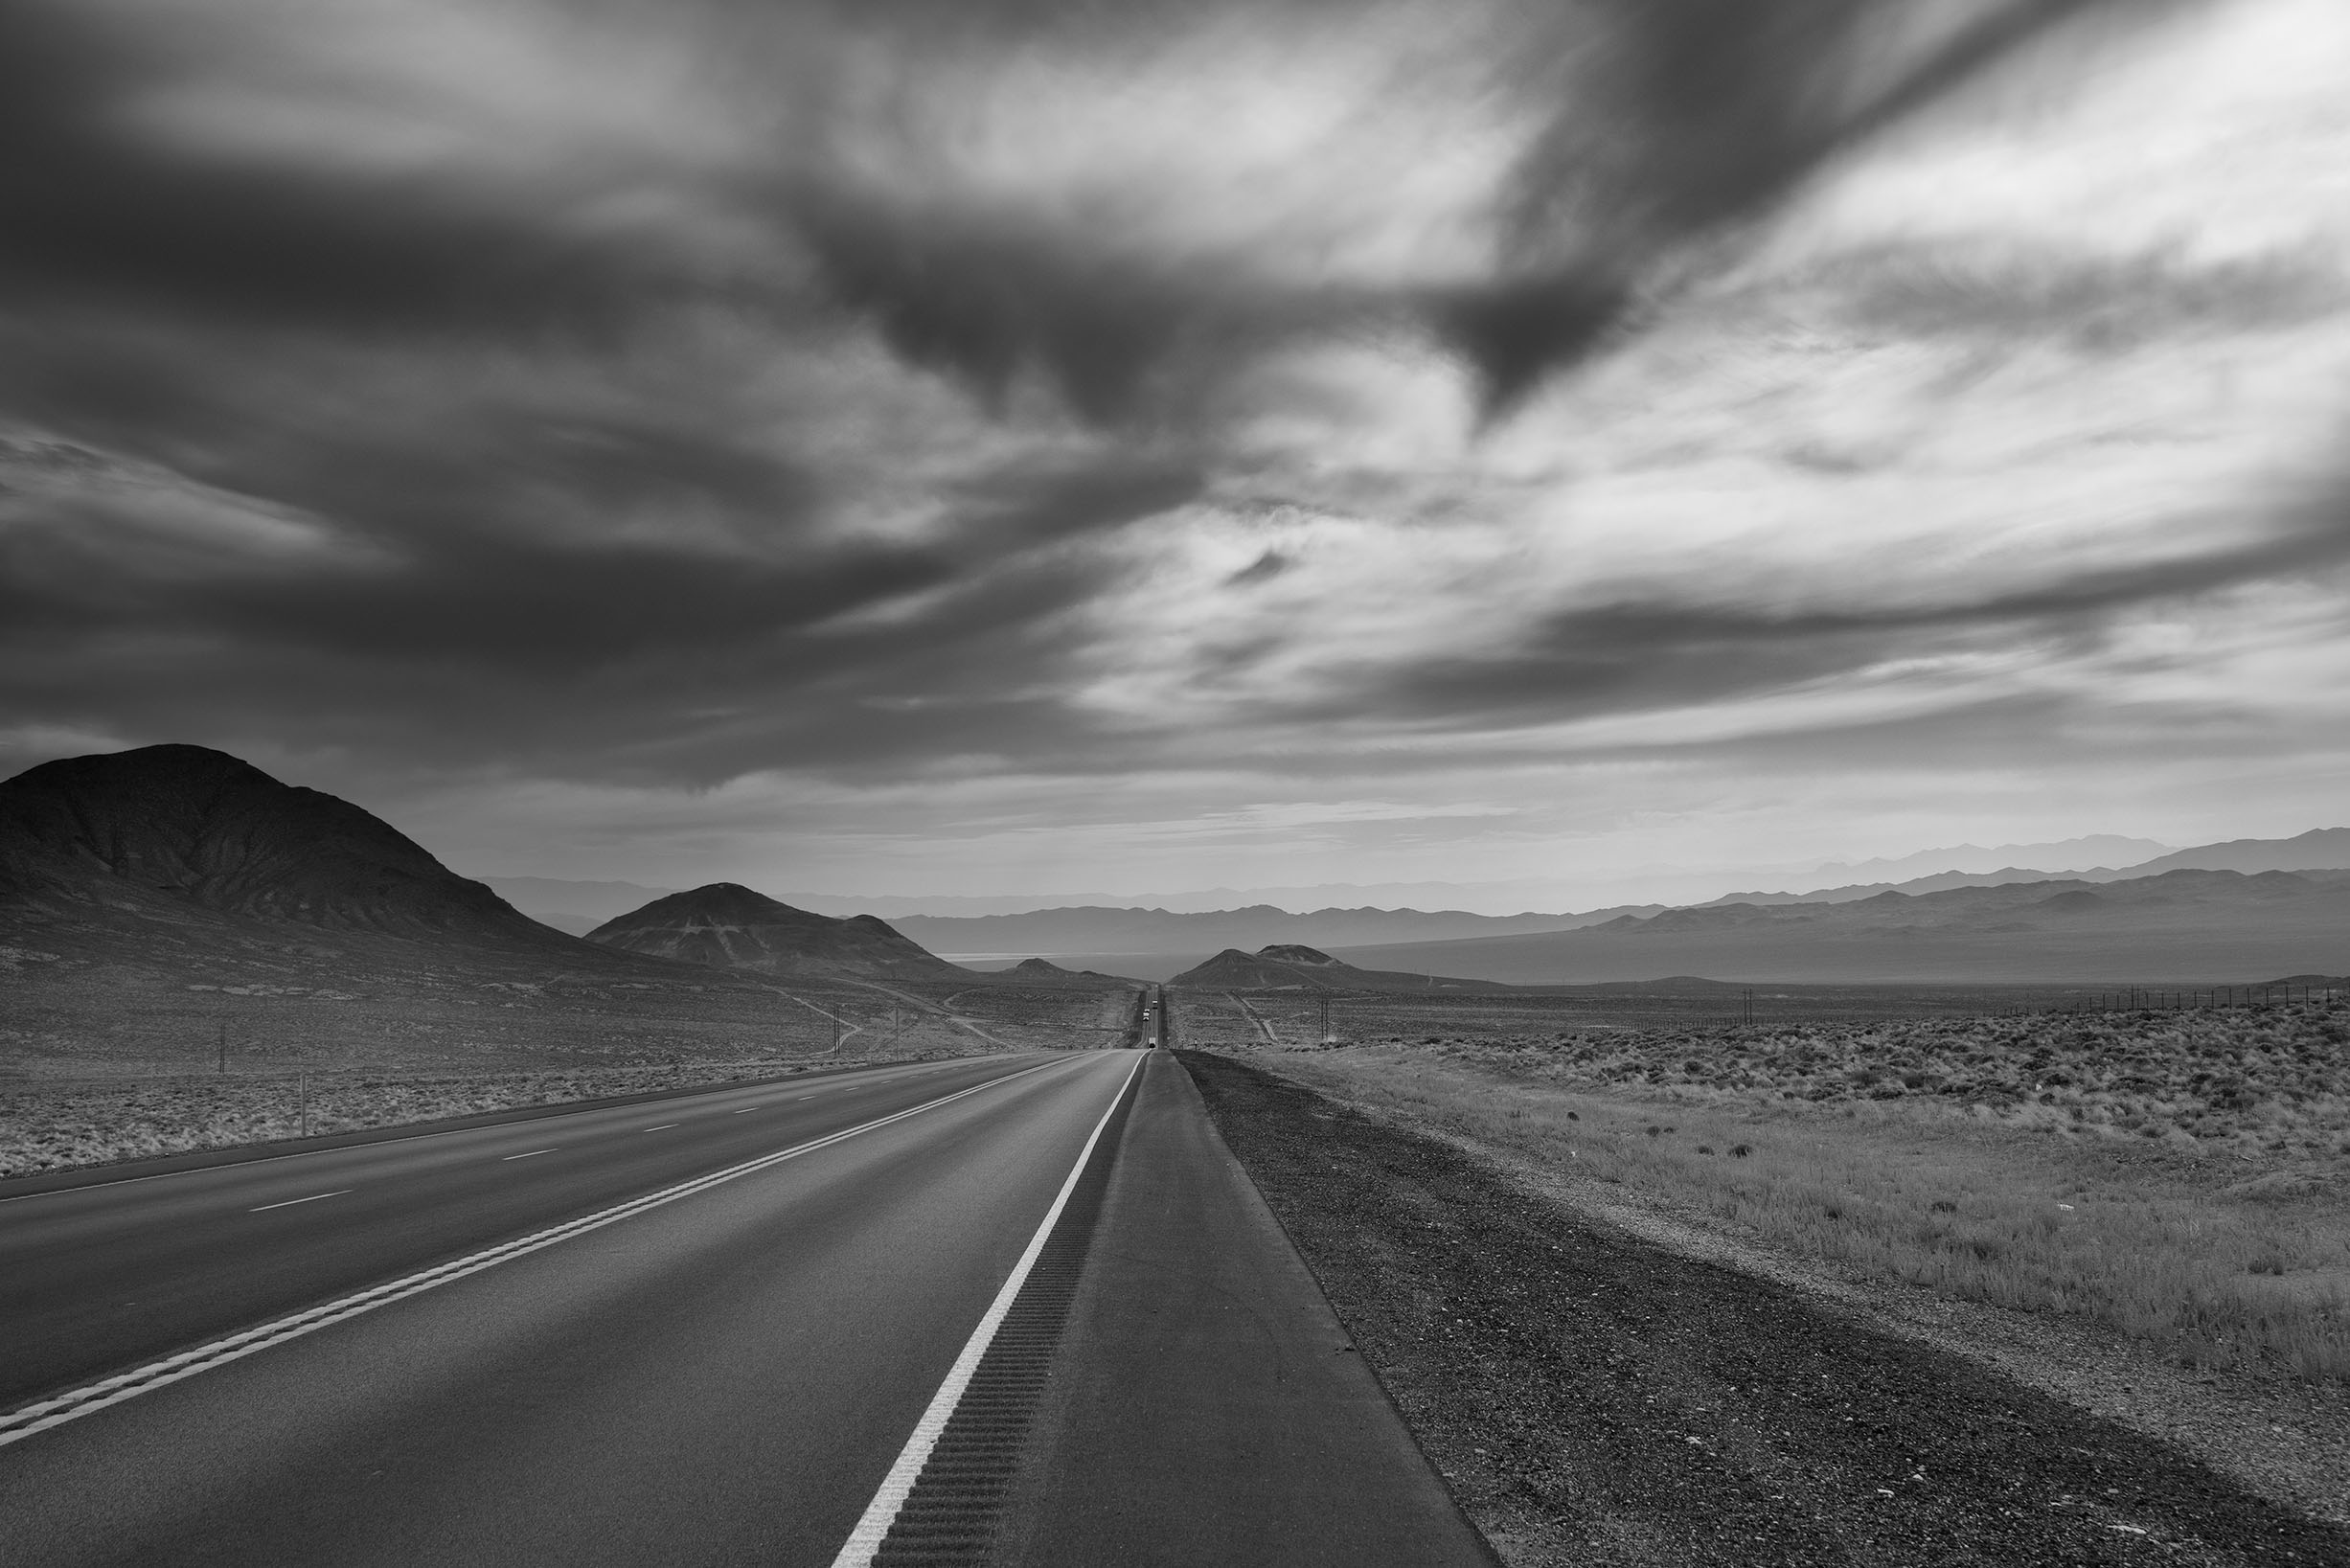 Roadside, Nevada © Harold Davis